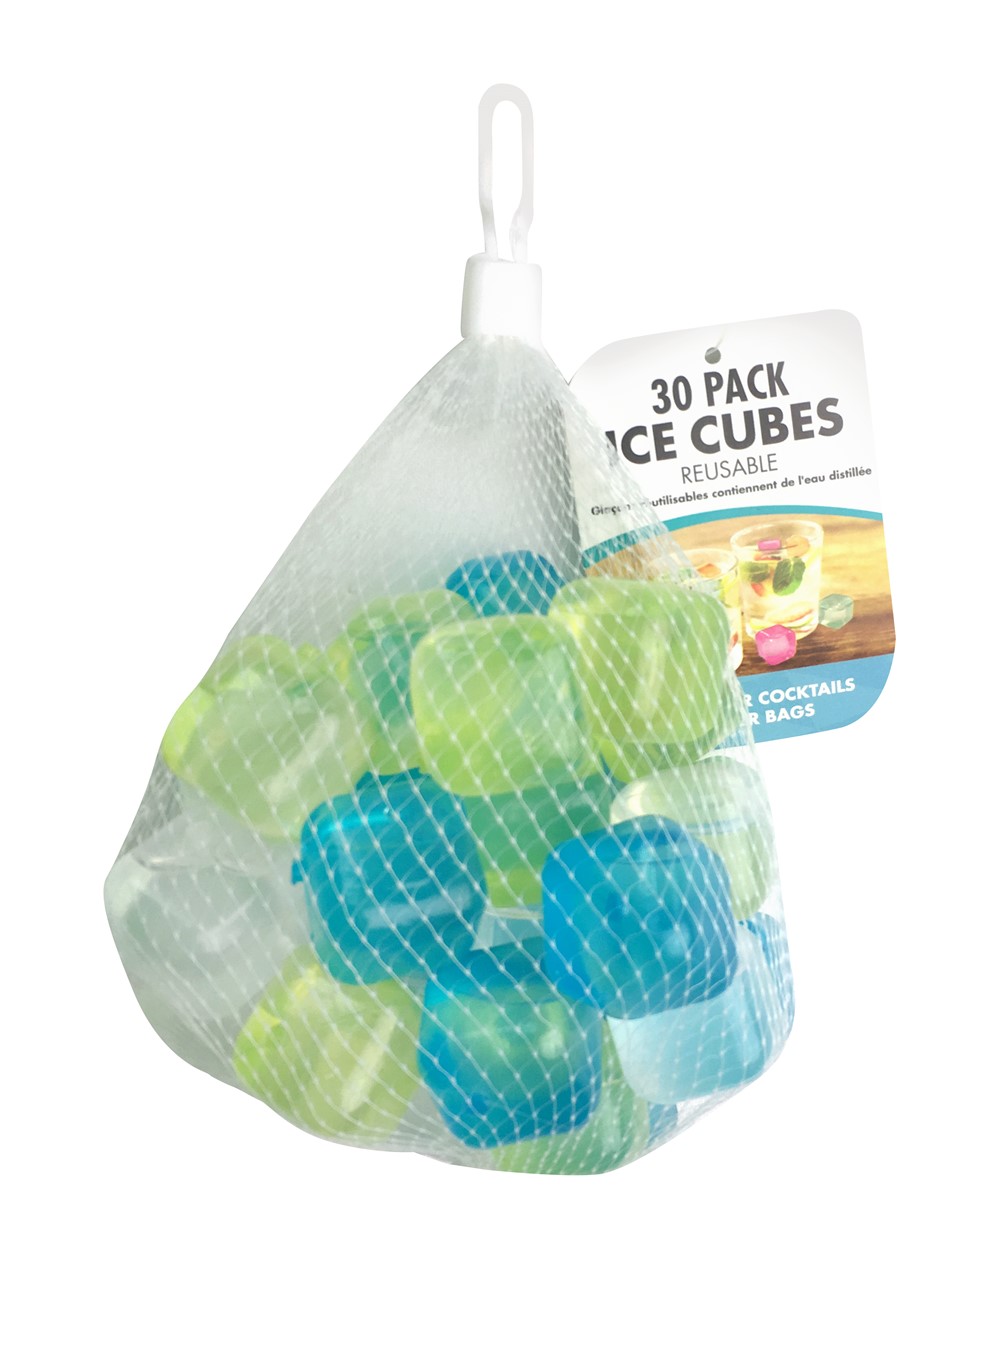 Cube de glaçons réutilisables 30pk - UBL